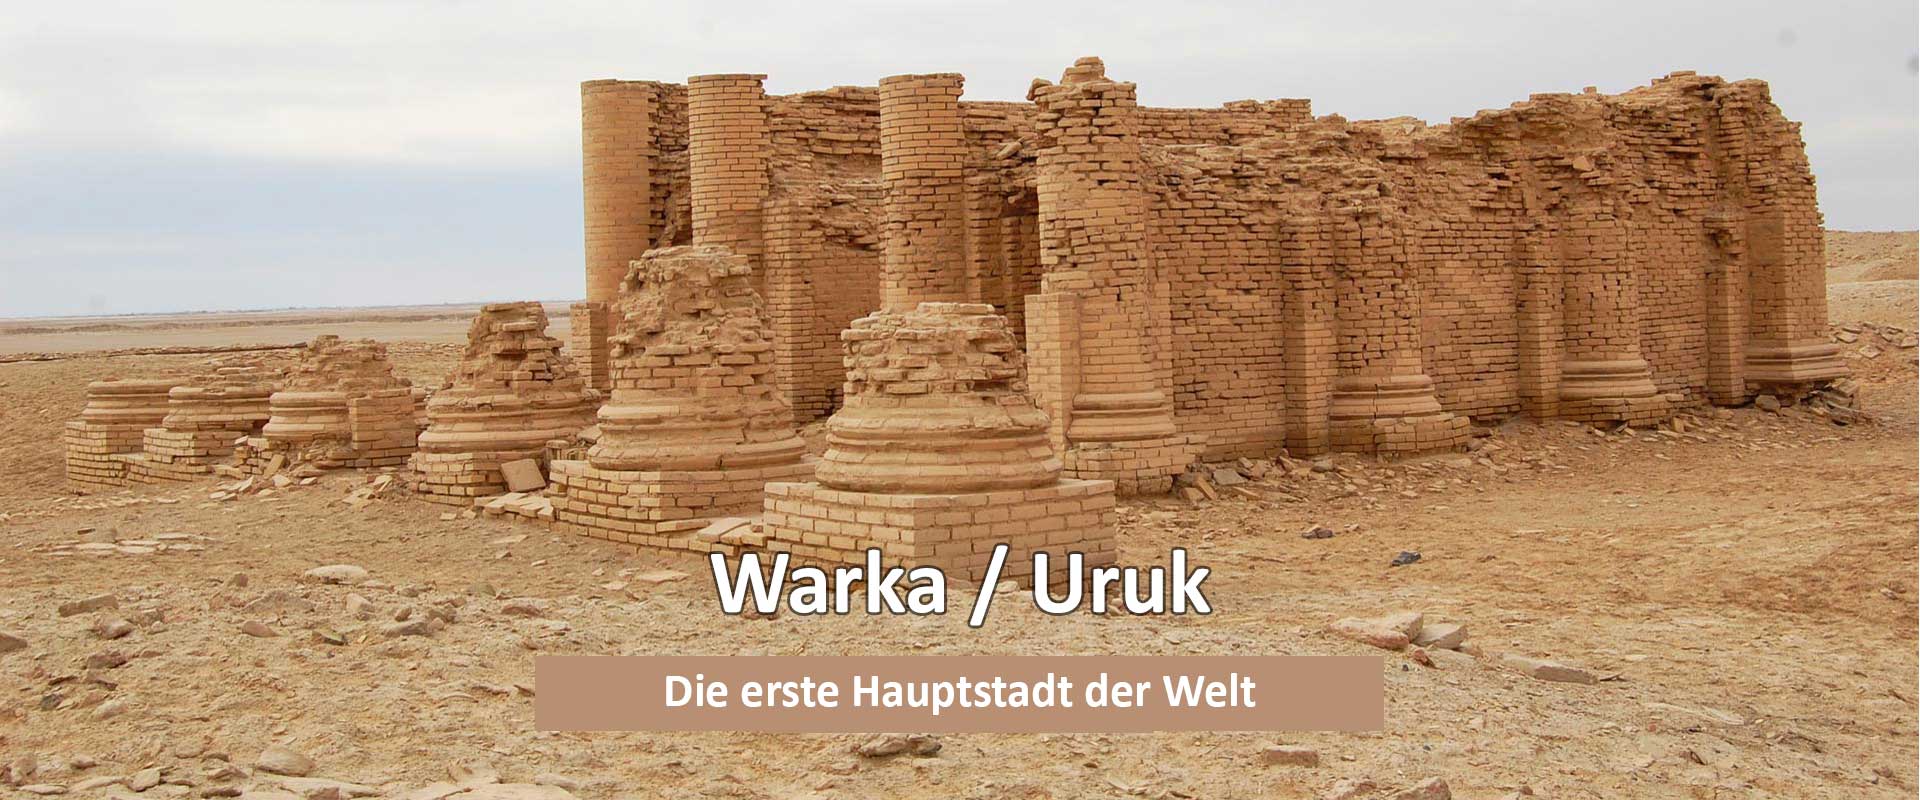 Warka/Uruk